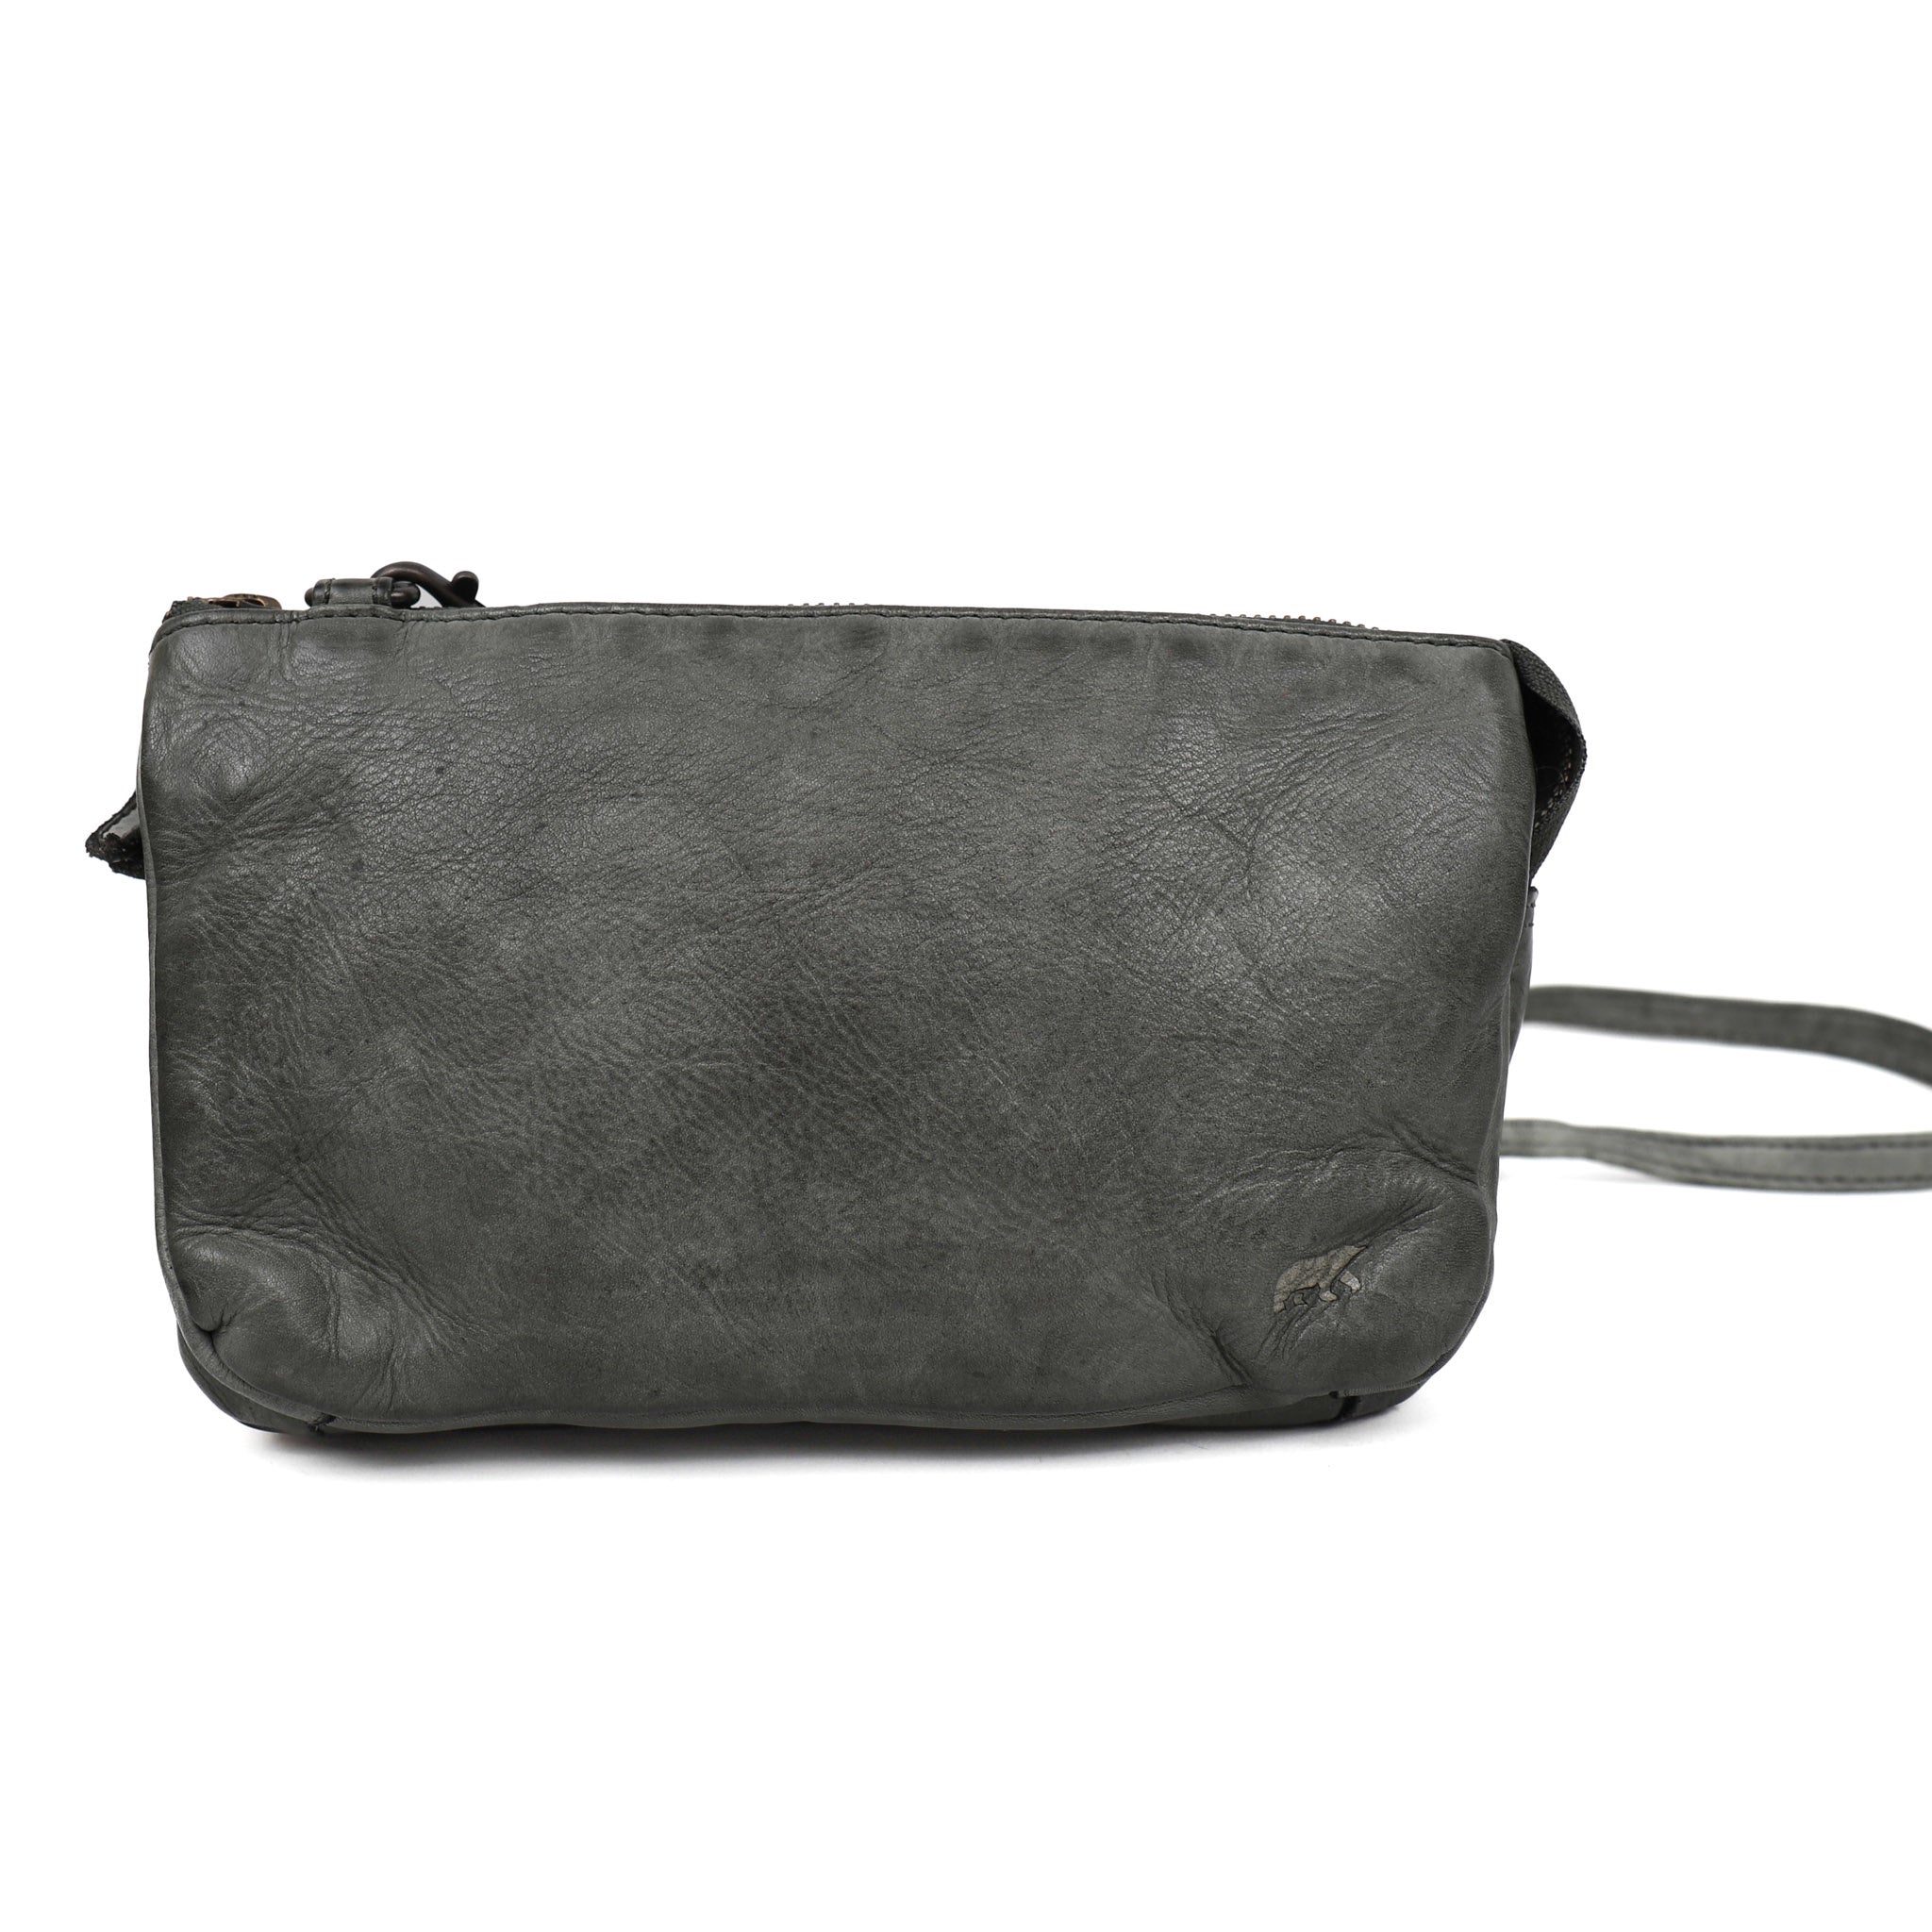 Purse bag 'Uma' ultimate gray - CL 30996